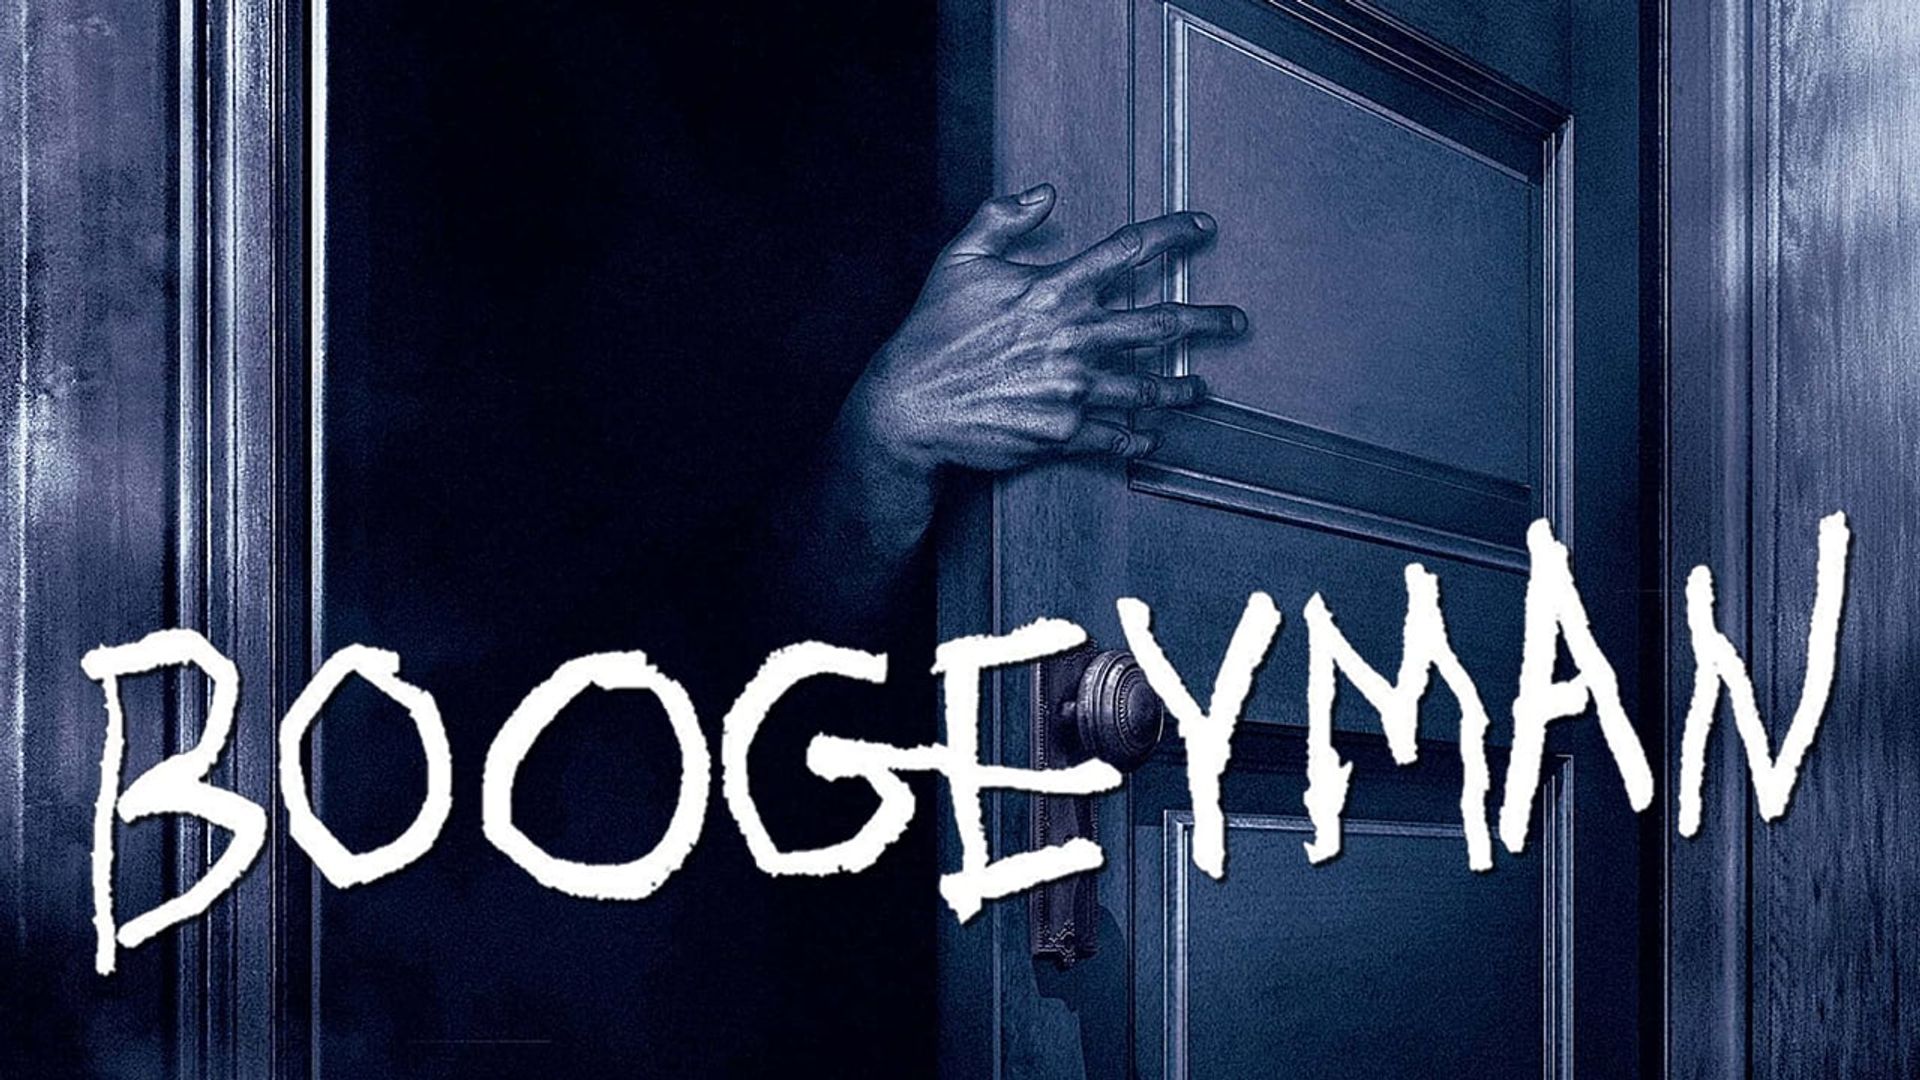 film the boogeyman